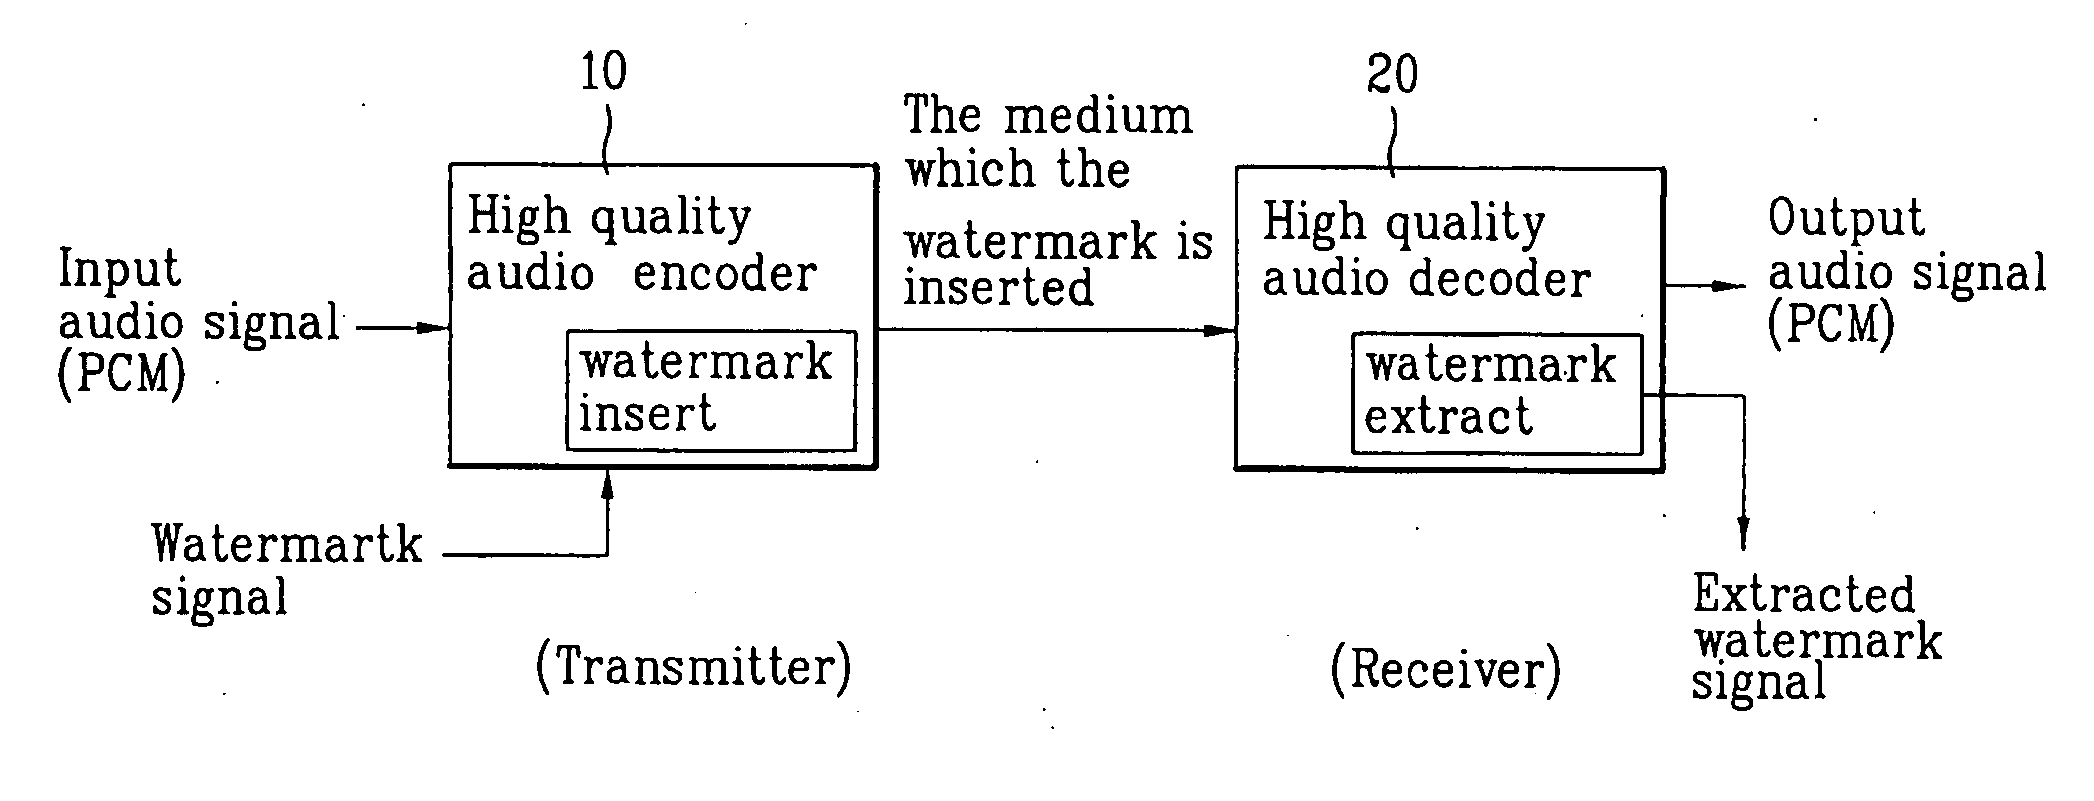 Digital audio watermark inserting/detecting apparatus and method